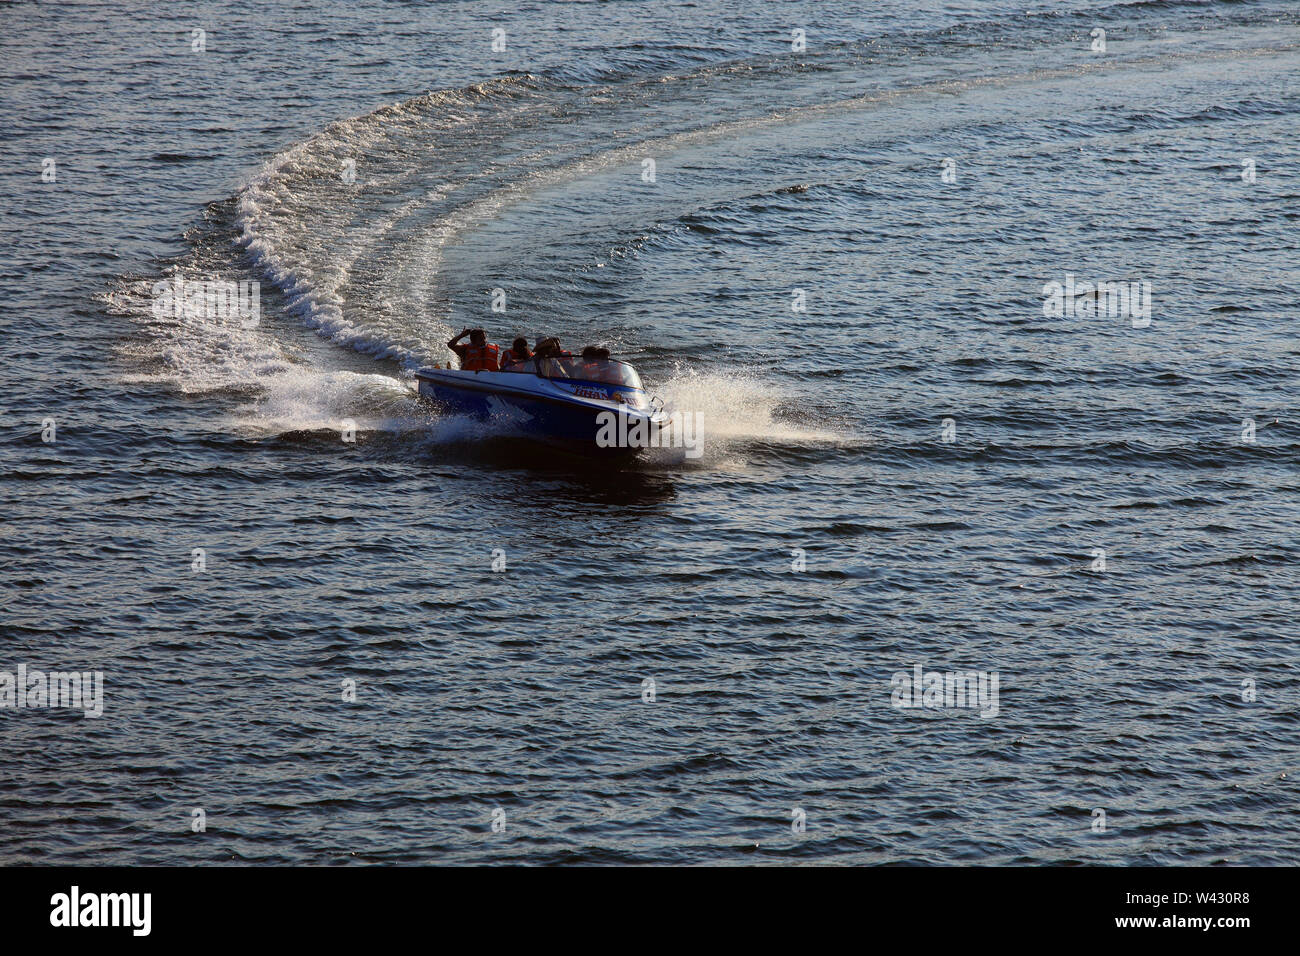 Le bateau de vitesse dans le lac Banasura, Wayanad, Kerala Banque D'Images